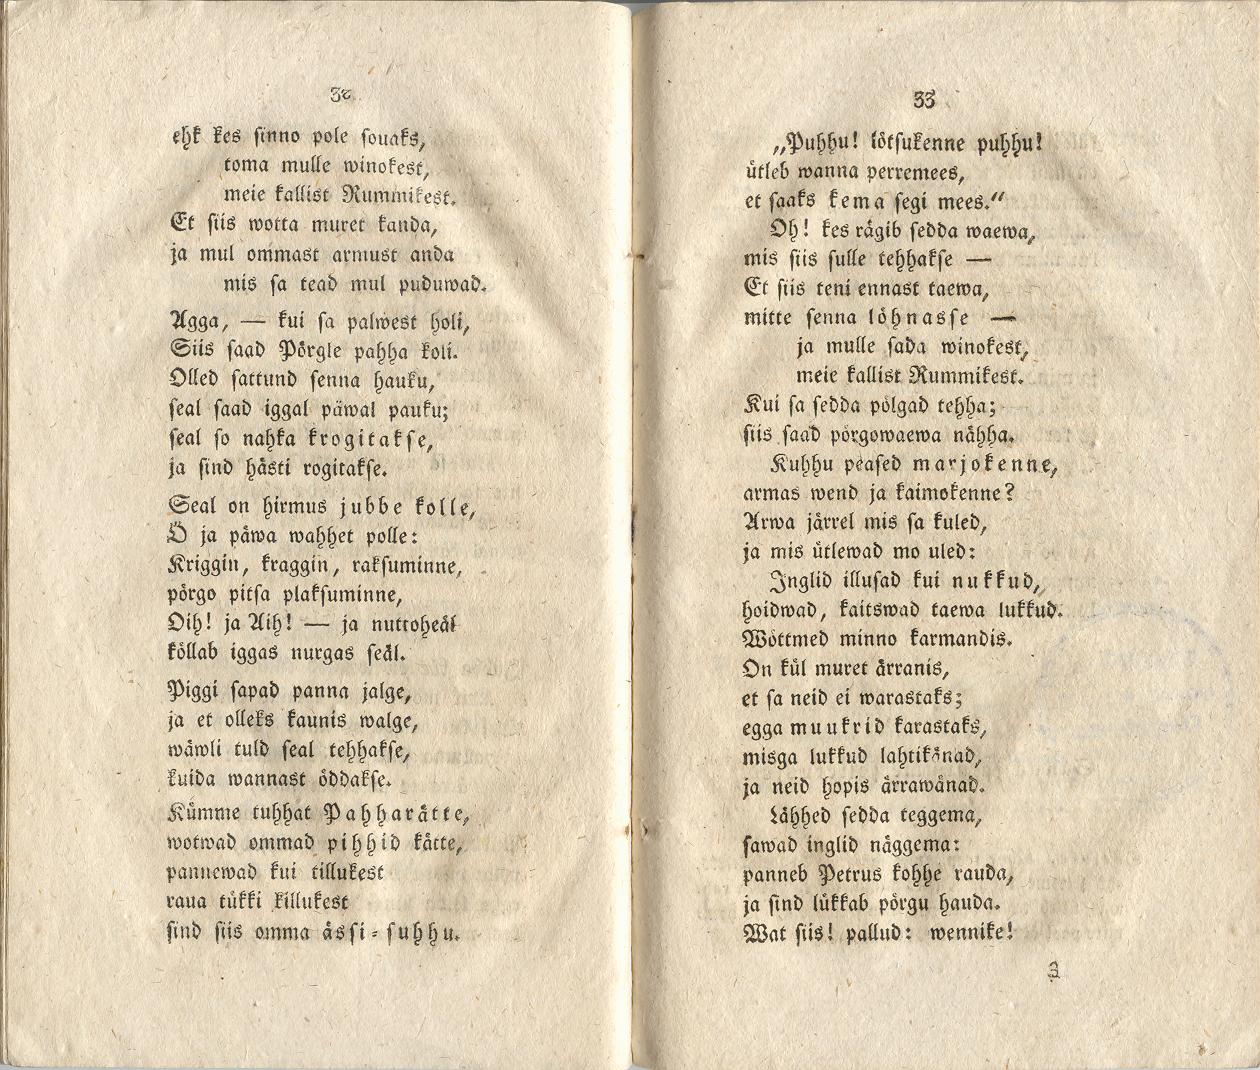 Ehstnische Originalblätter für Deutsche (1816) | 22. (32-33) Haupttext